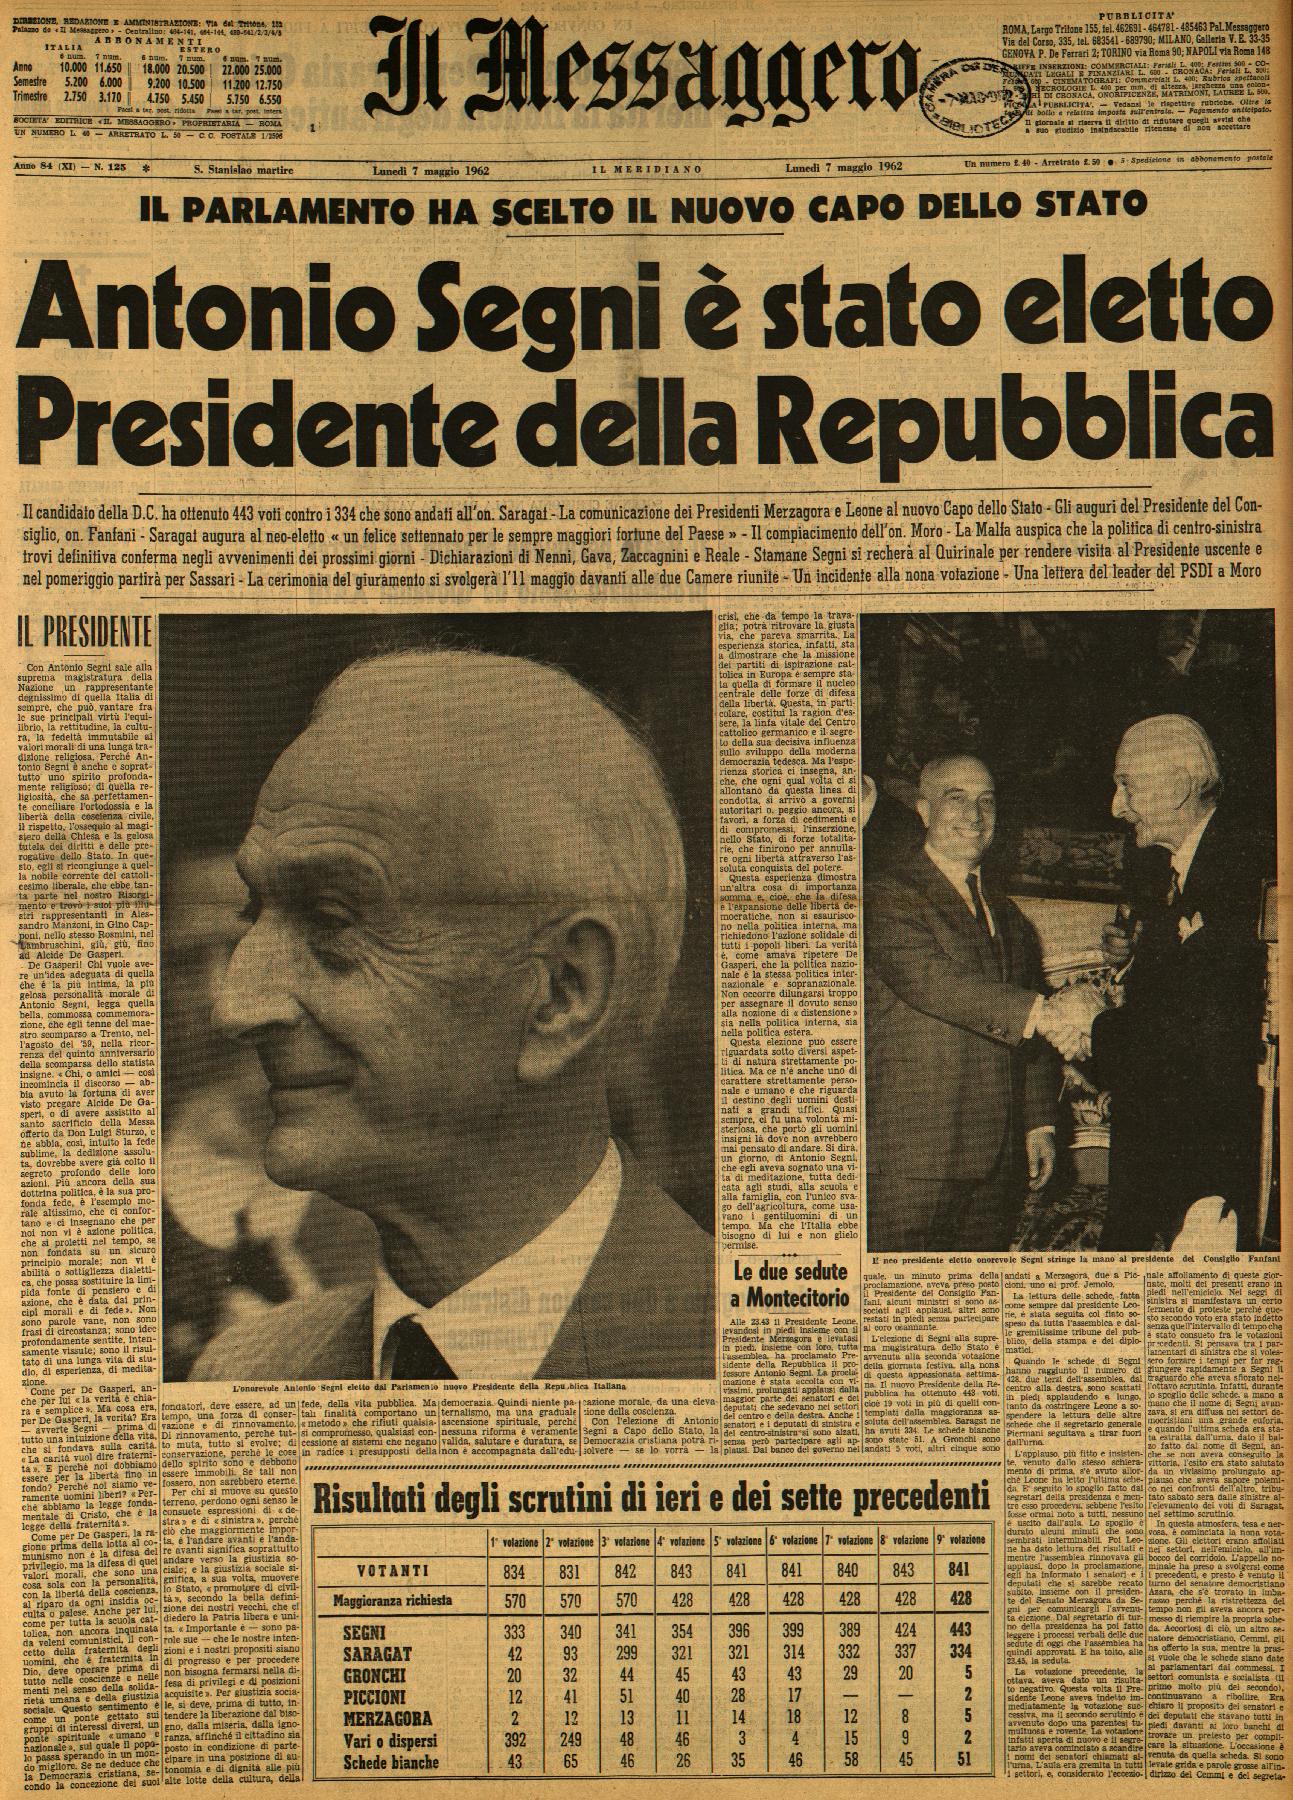 Le elezioni dei Presidenti della Repubblica attraverso le prime pagine storiche dei giornali